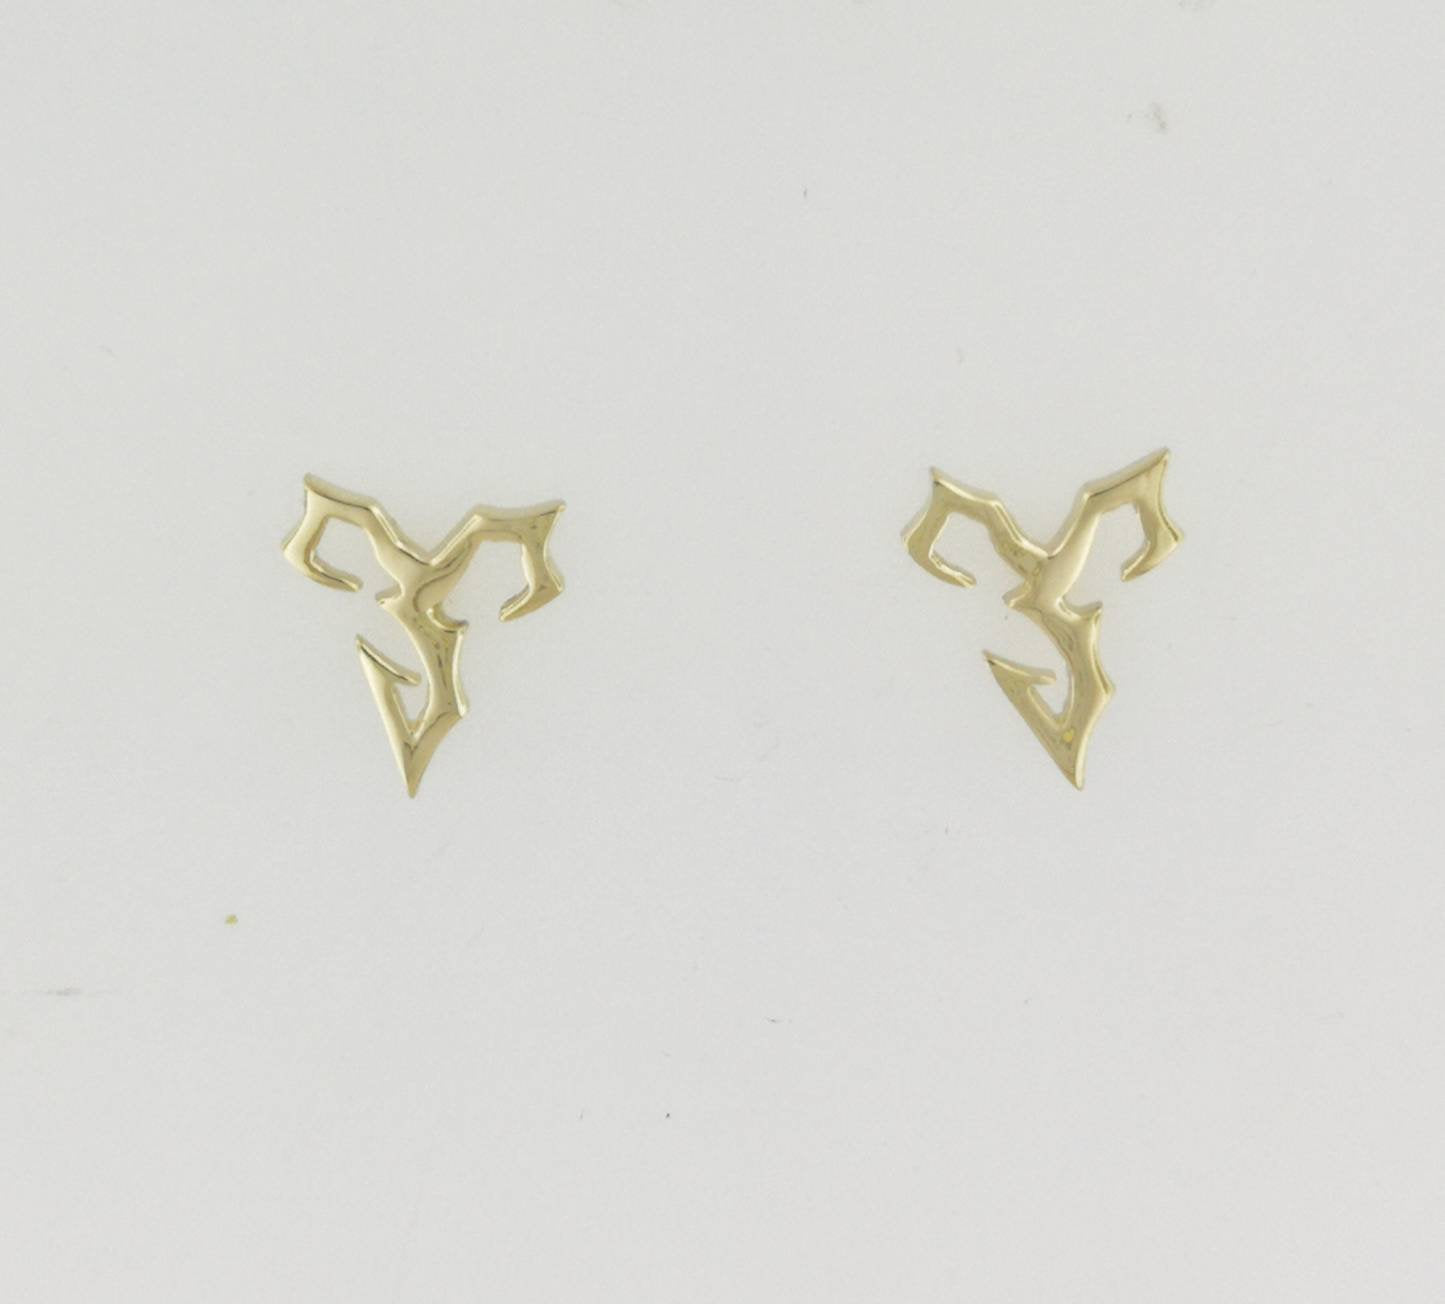 Final Fantasy X Tidus Stud Earrings in Yellow Gold, Final Fantasy X Stud Earrings, FFX Tidus Stud Earrings, Final Fantasy 10 Earrings